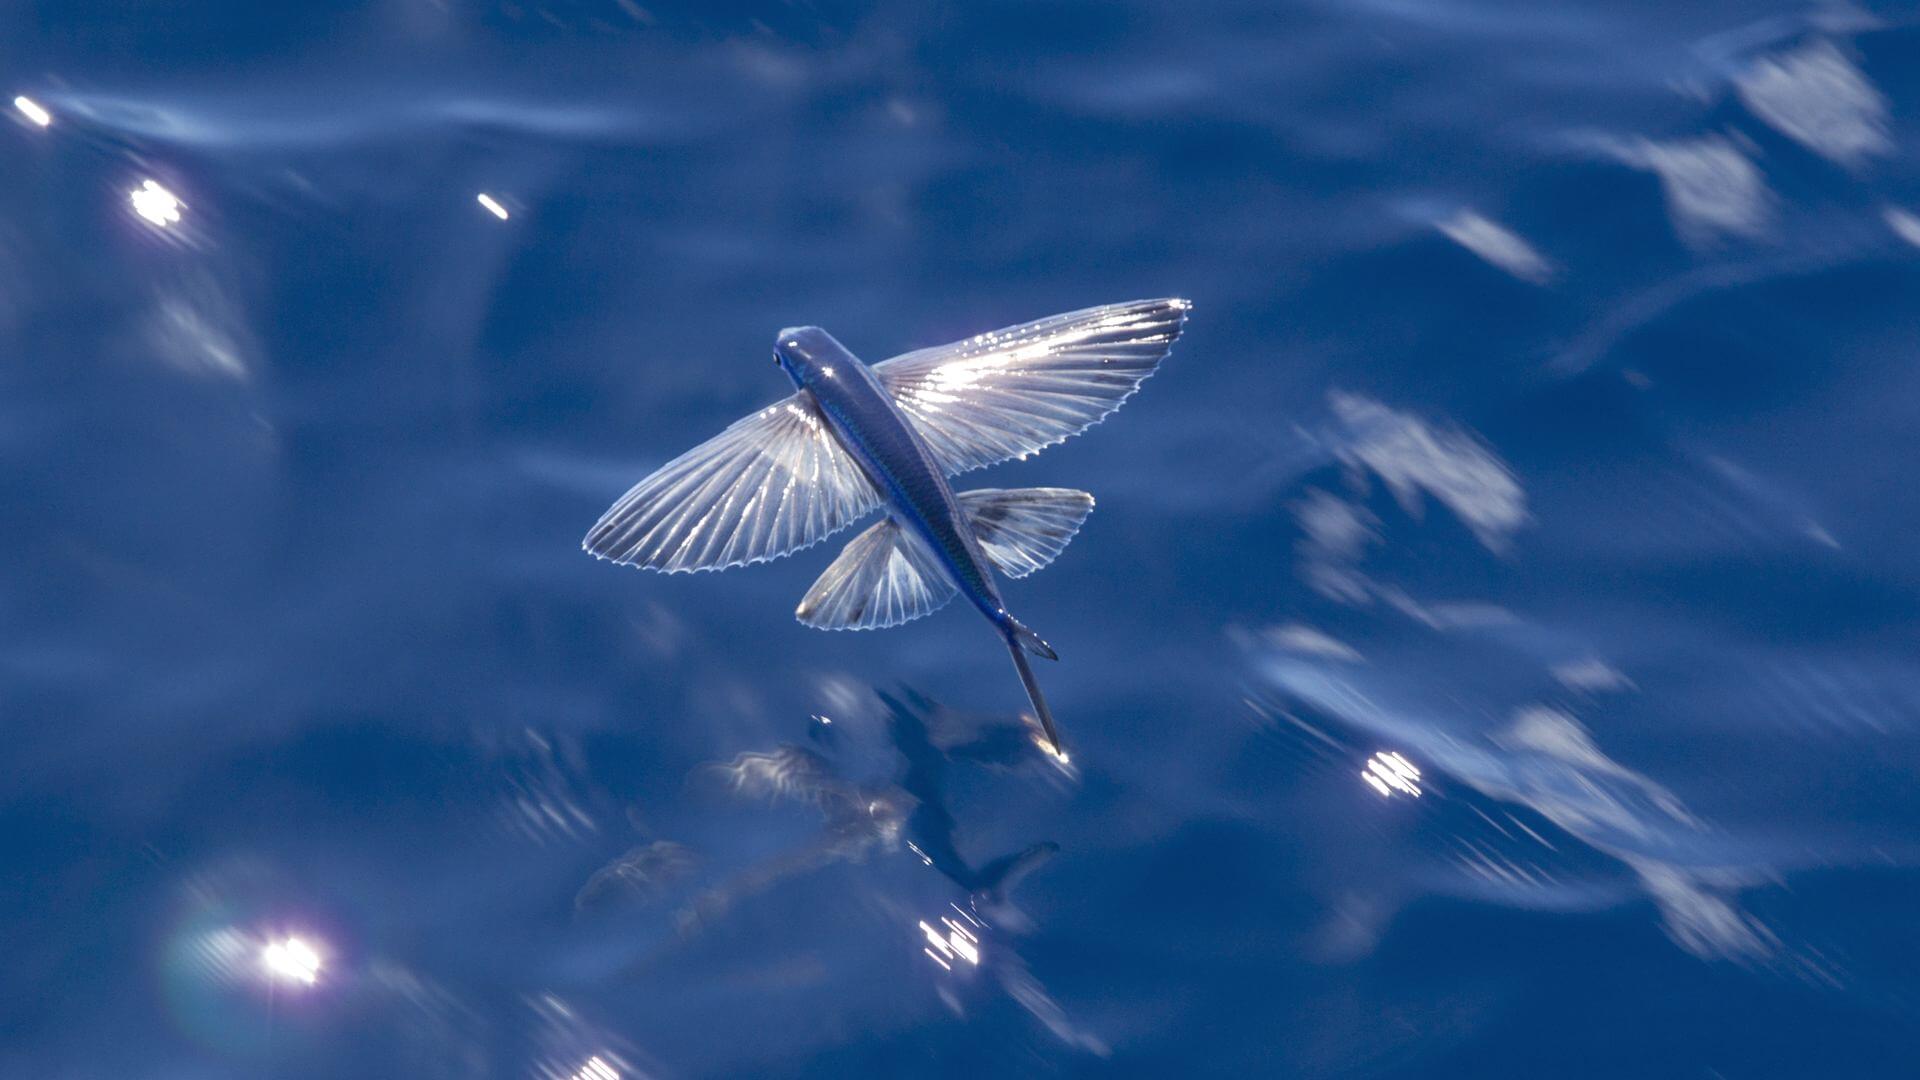 Крылья летучей рыбы. Четырехкрылая летучая рыба. Двукрылая летучая рыба. Летучая рыба биплан. Летучие рыбы Атлантического океана.